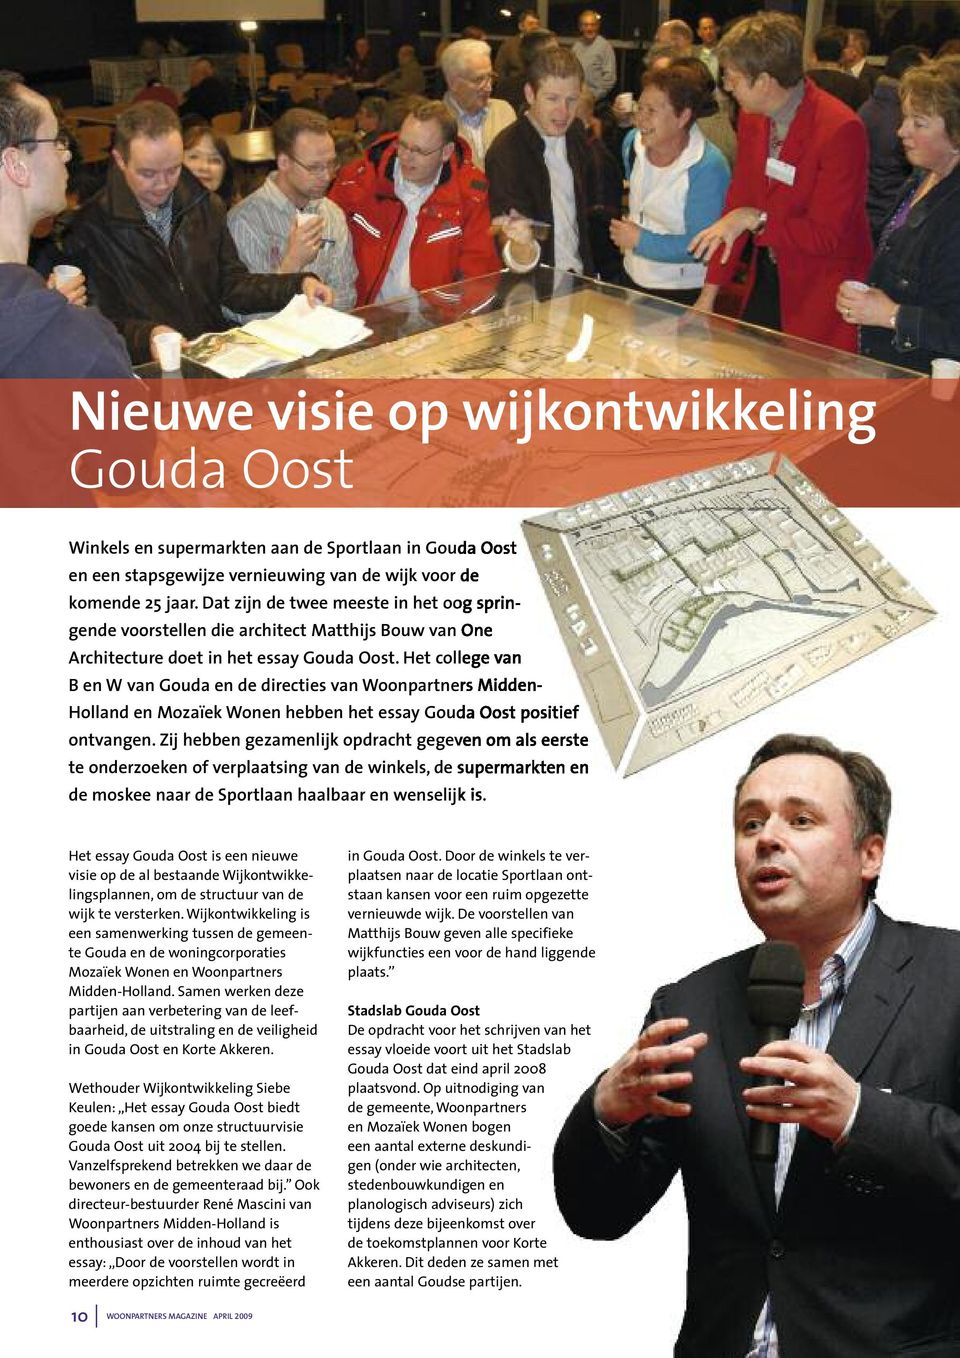 Het college van B en W van Gouda en de directies van Woonpartners Midden- Holland en Mozaïek Wonen hebben het essay Gouda Oost positief ontvangen.